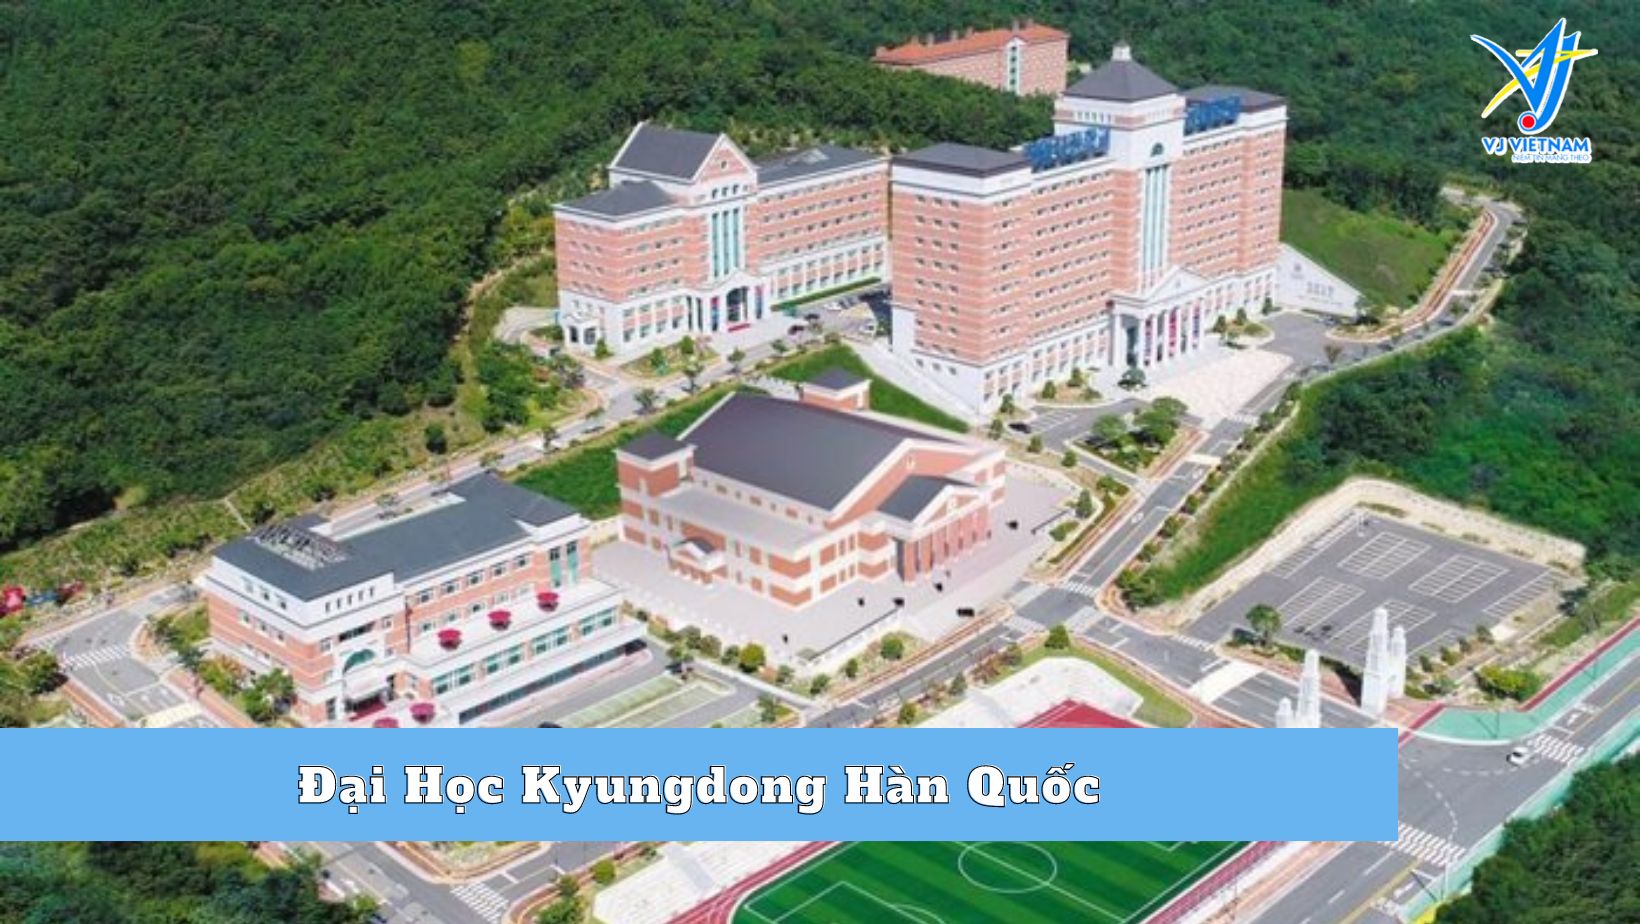 Tổng quan về Đại Học Kyungdong Hàn Quốc